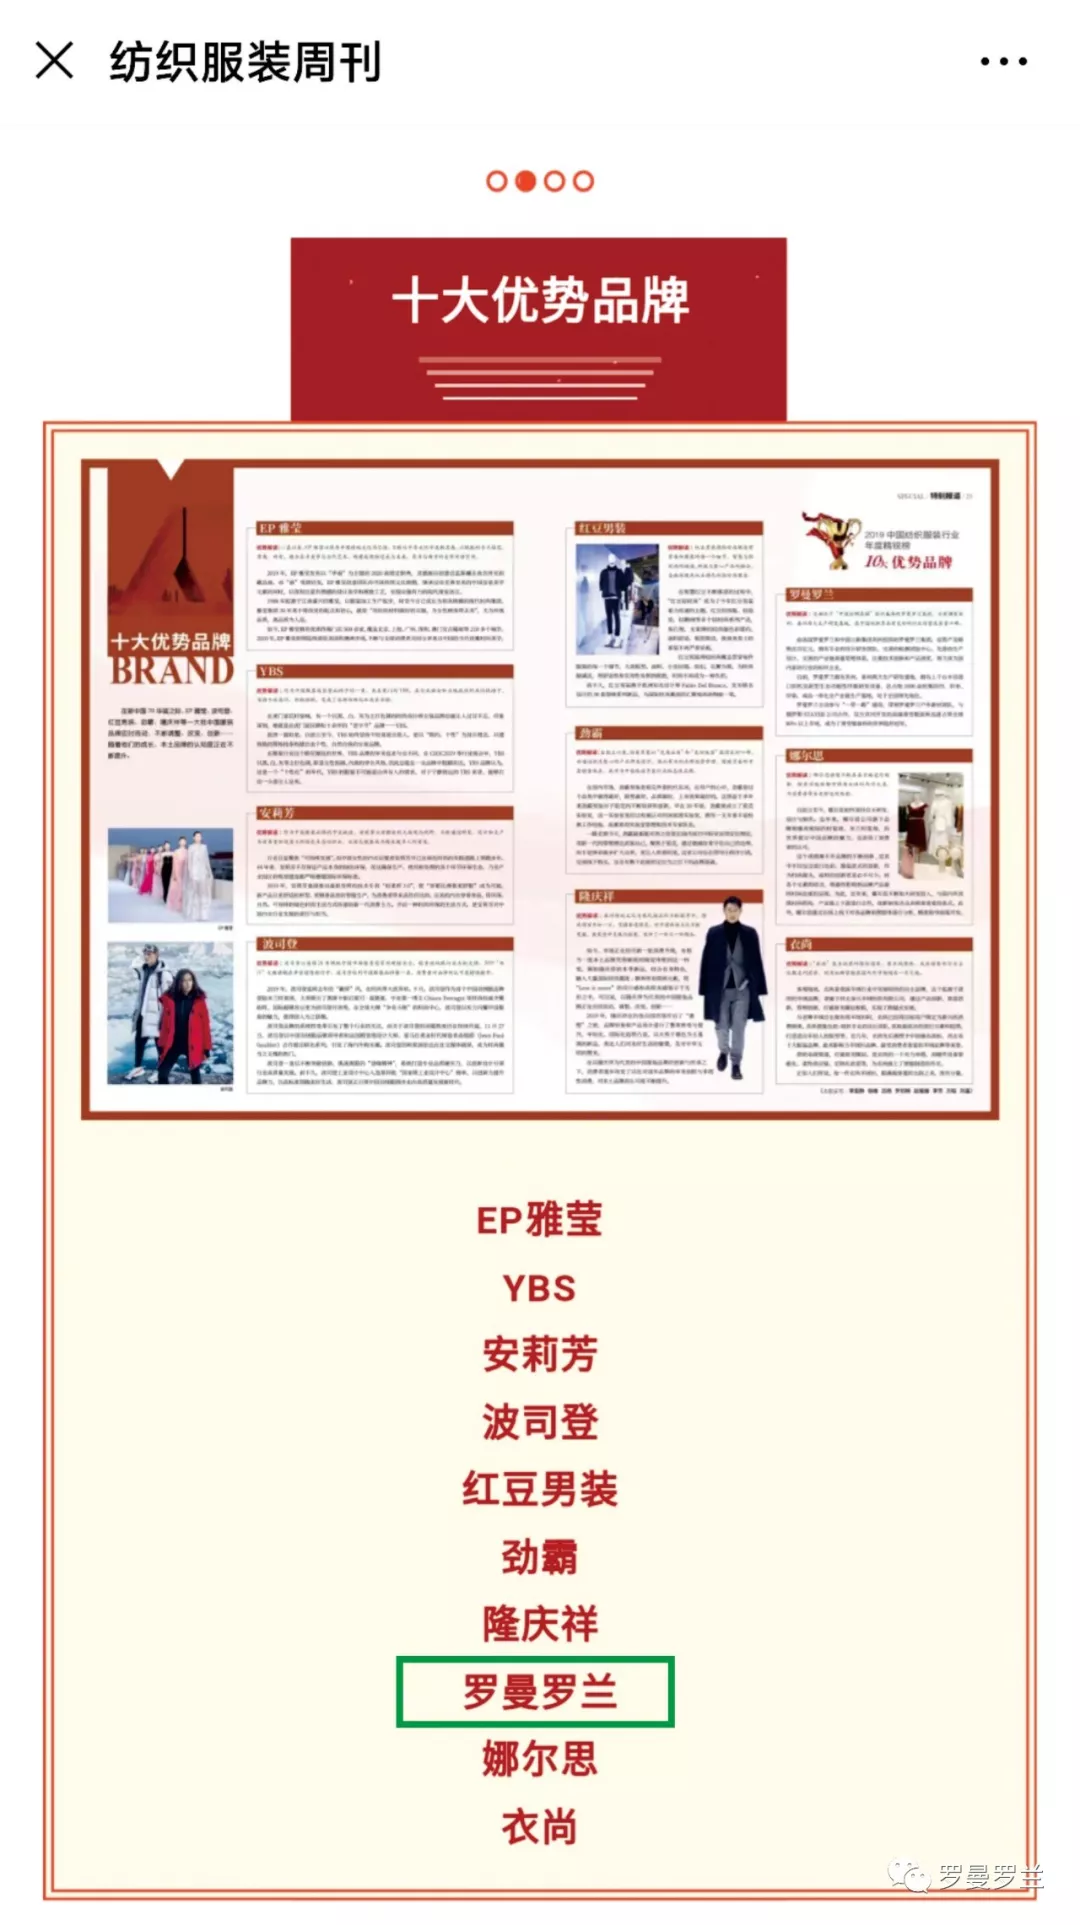 罗曼罗兰荣获2019中国纺织服装行业年度精锐榜10大优势品牌称号